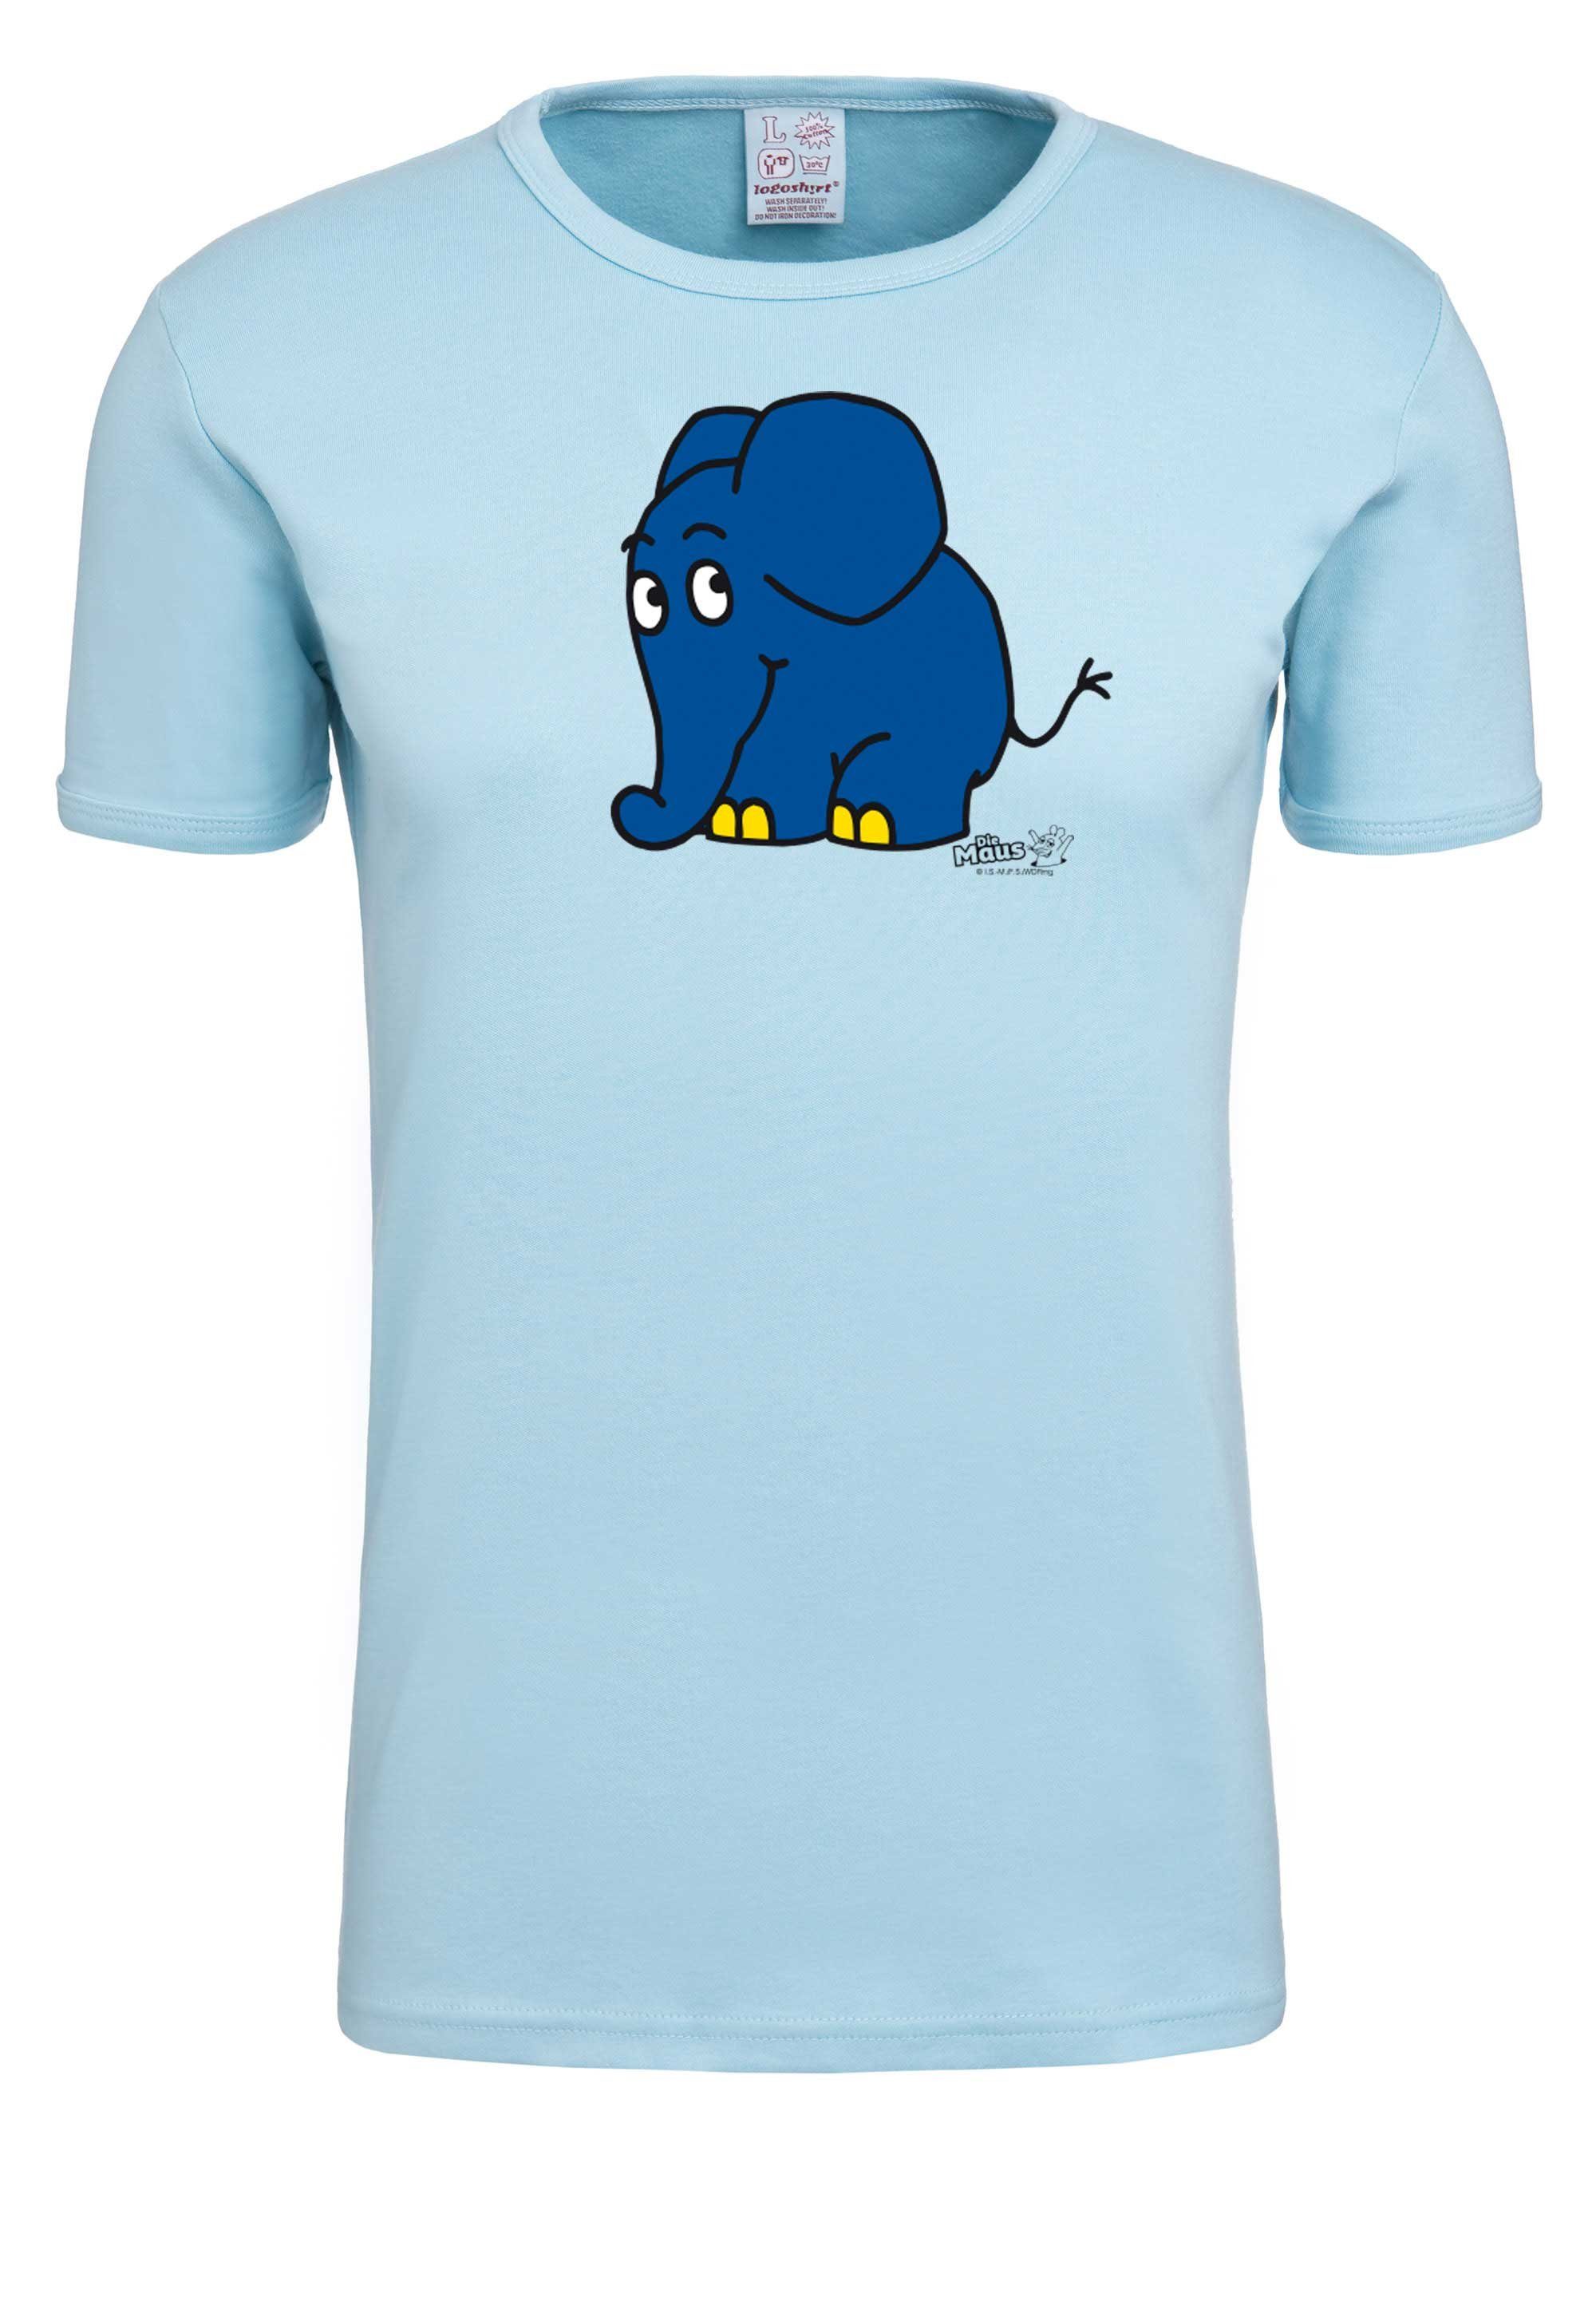 LOGOSHIRT T-Shirt Sendung Print der mit Elefant - coolem mit Maus